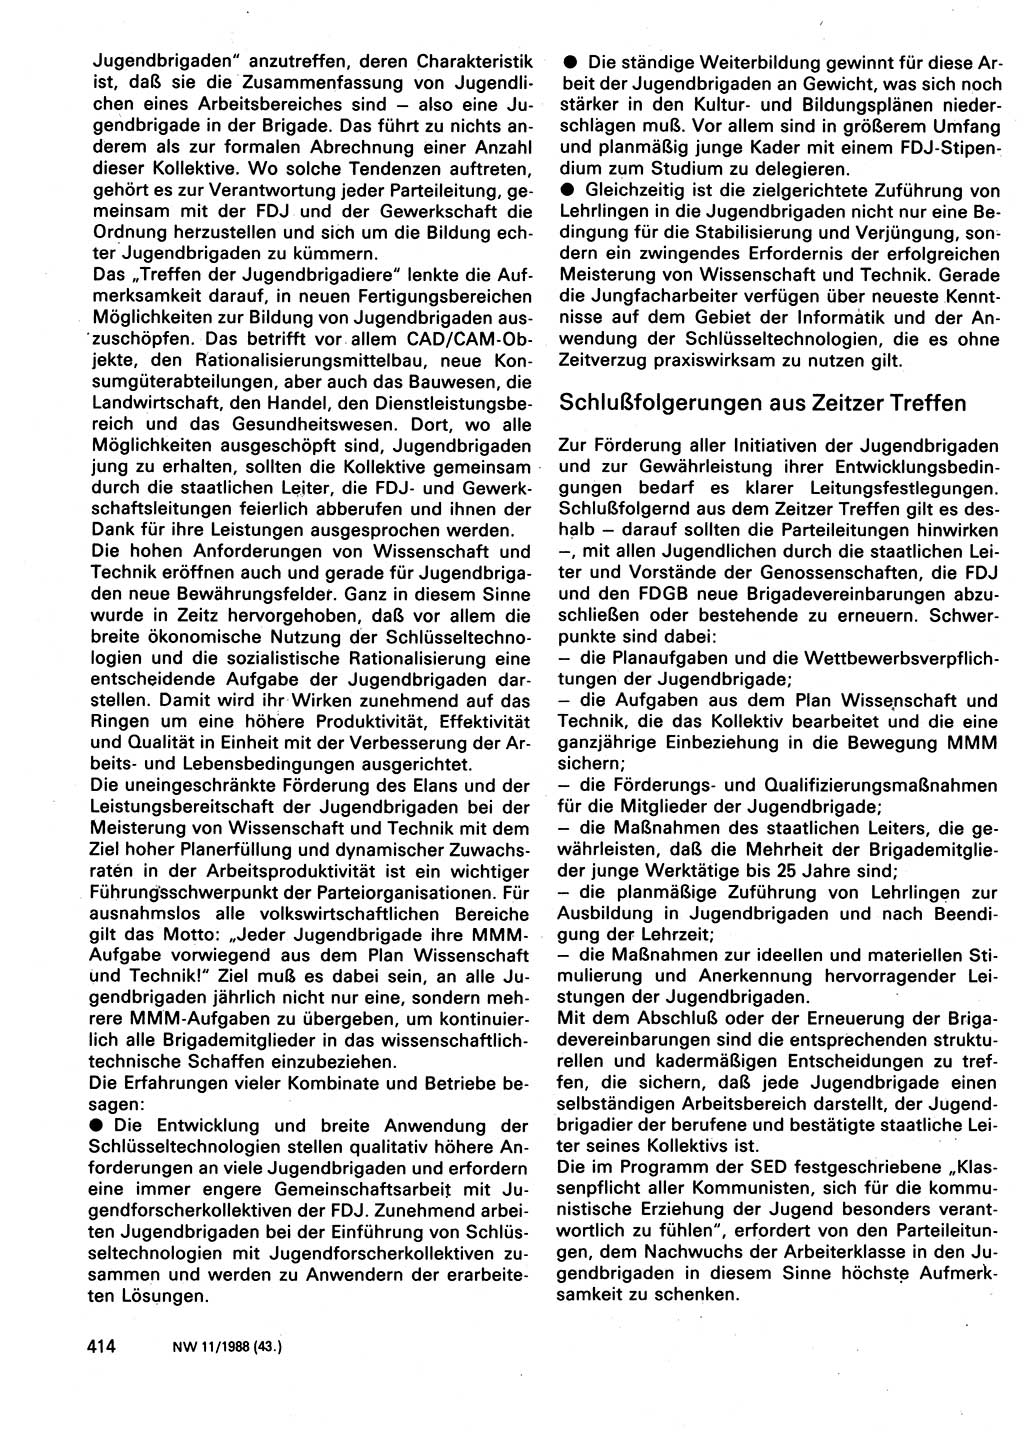 Neuer Weg (NW), Organ des Zentralkomitees (ZK) der SED (Sozialistische Einheitspartei Deutschlands) für Fragen des Parteilebens, 43. Jahrgang [Deutsche Demokratische Republik (DDR)] 1988, Seite 414 (NW ZK SED DDR 1988, S. 414)